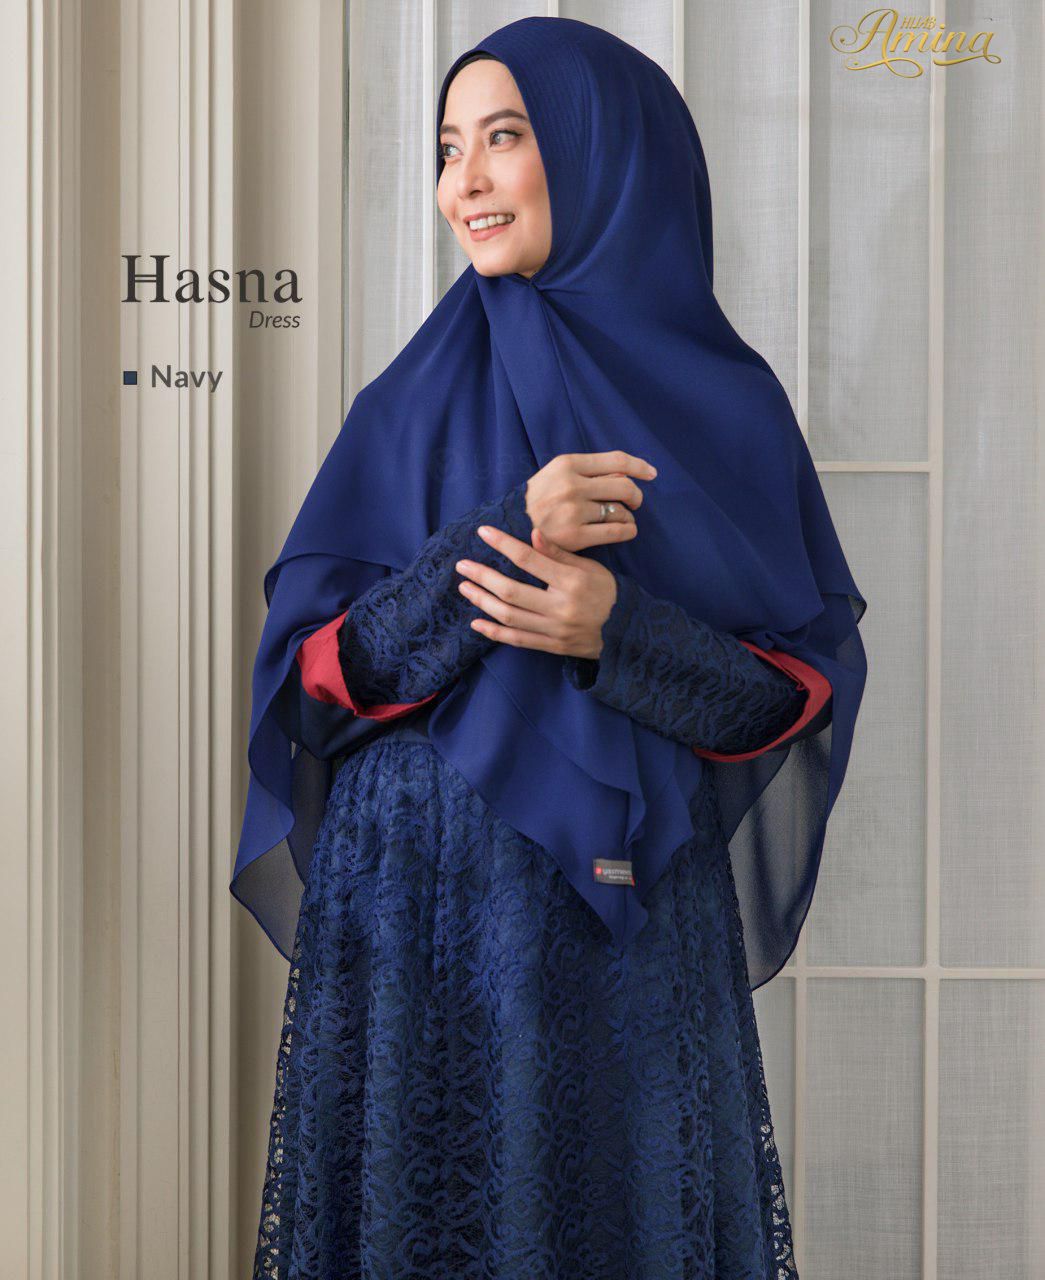 Hasna Dress – Navy